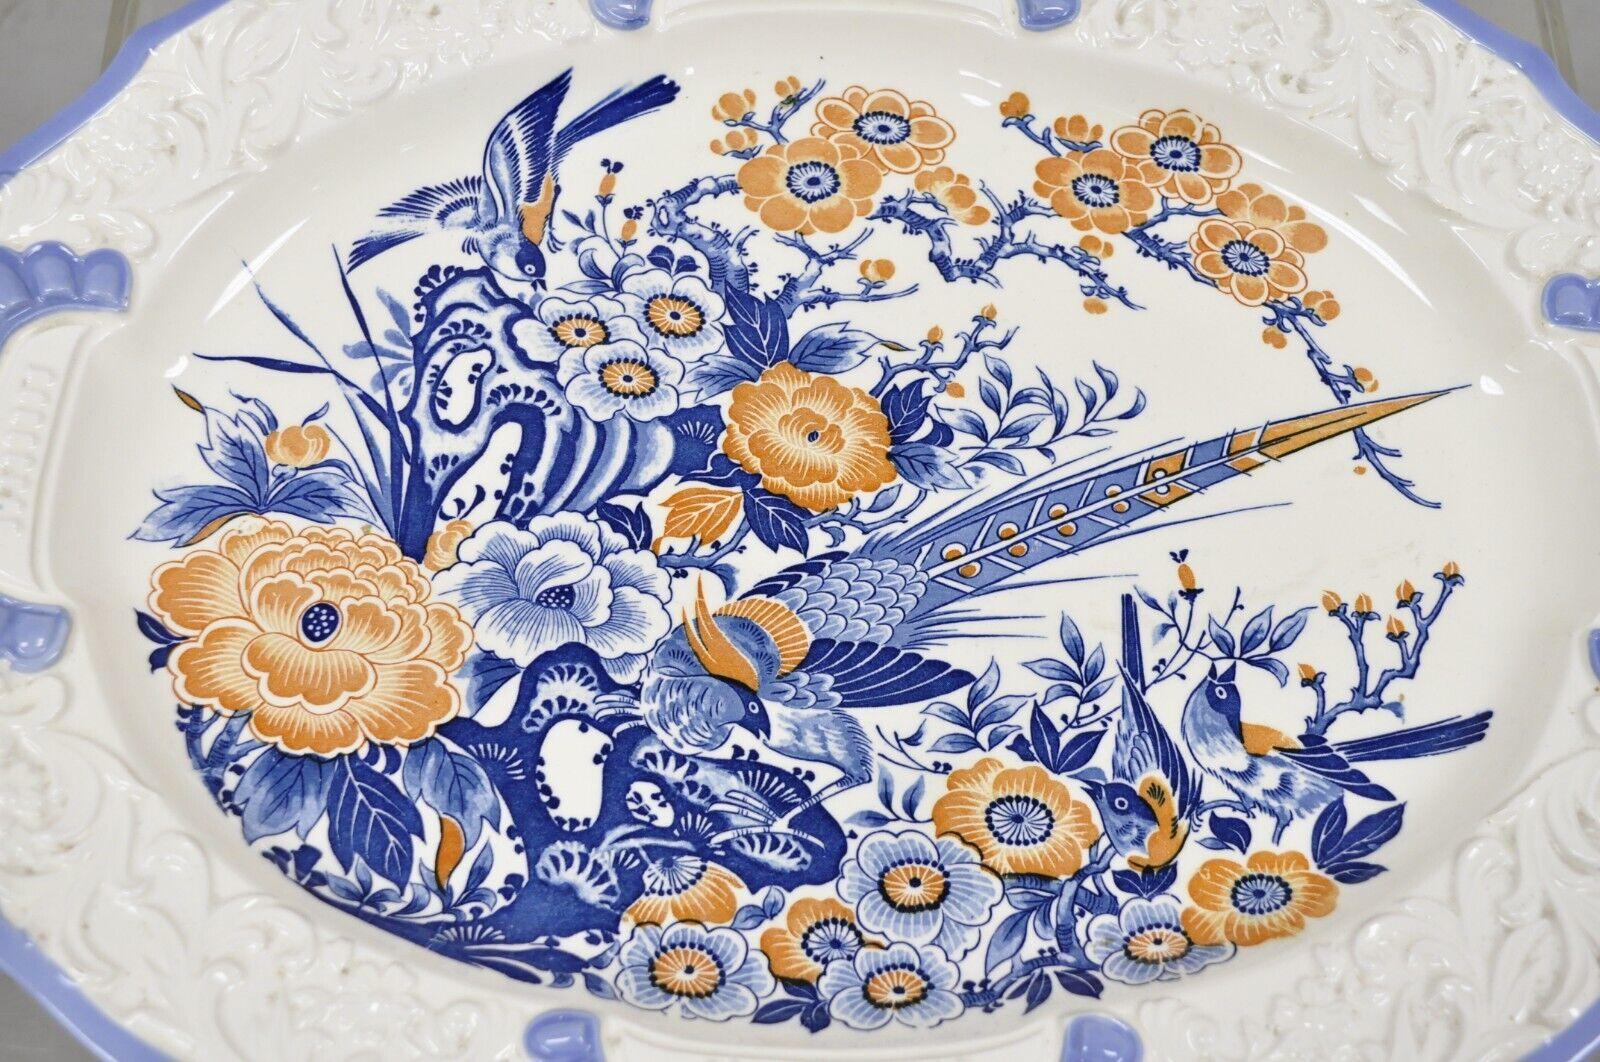 Chinese Export Chikusa Yokkaichi Japan Blue White Ceramic Chinese Bird Platter Dish Plate